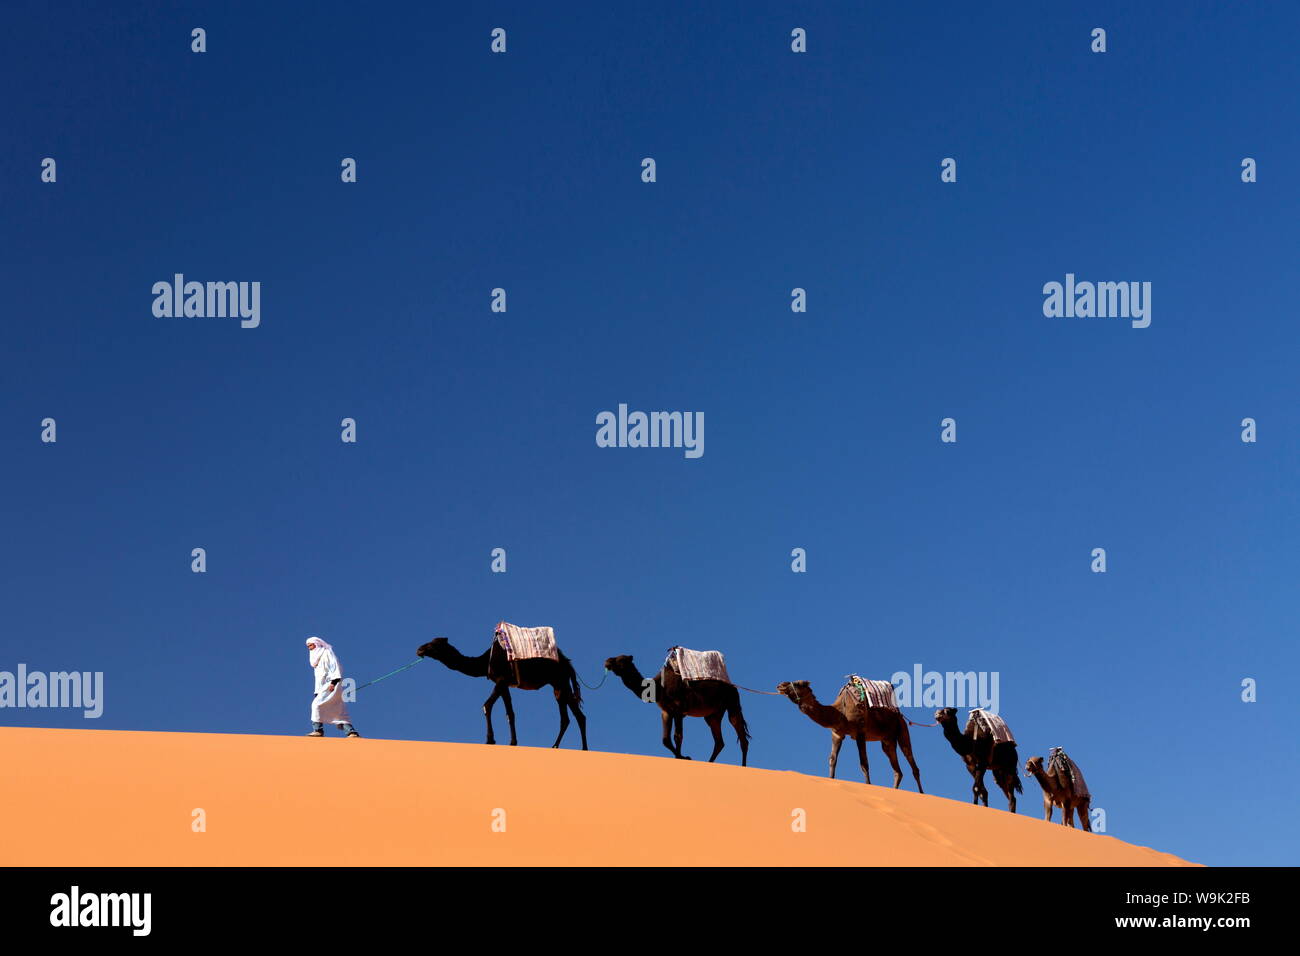 Homme berbère à la tête d'un train de chameaux sur les dunes de sable orange de l'Erg Chebbi, la mer de sable du désert du Sahara, près de Merzouga, Maroc, Afrique du Nord, Afrique Banque D'Images